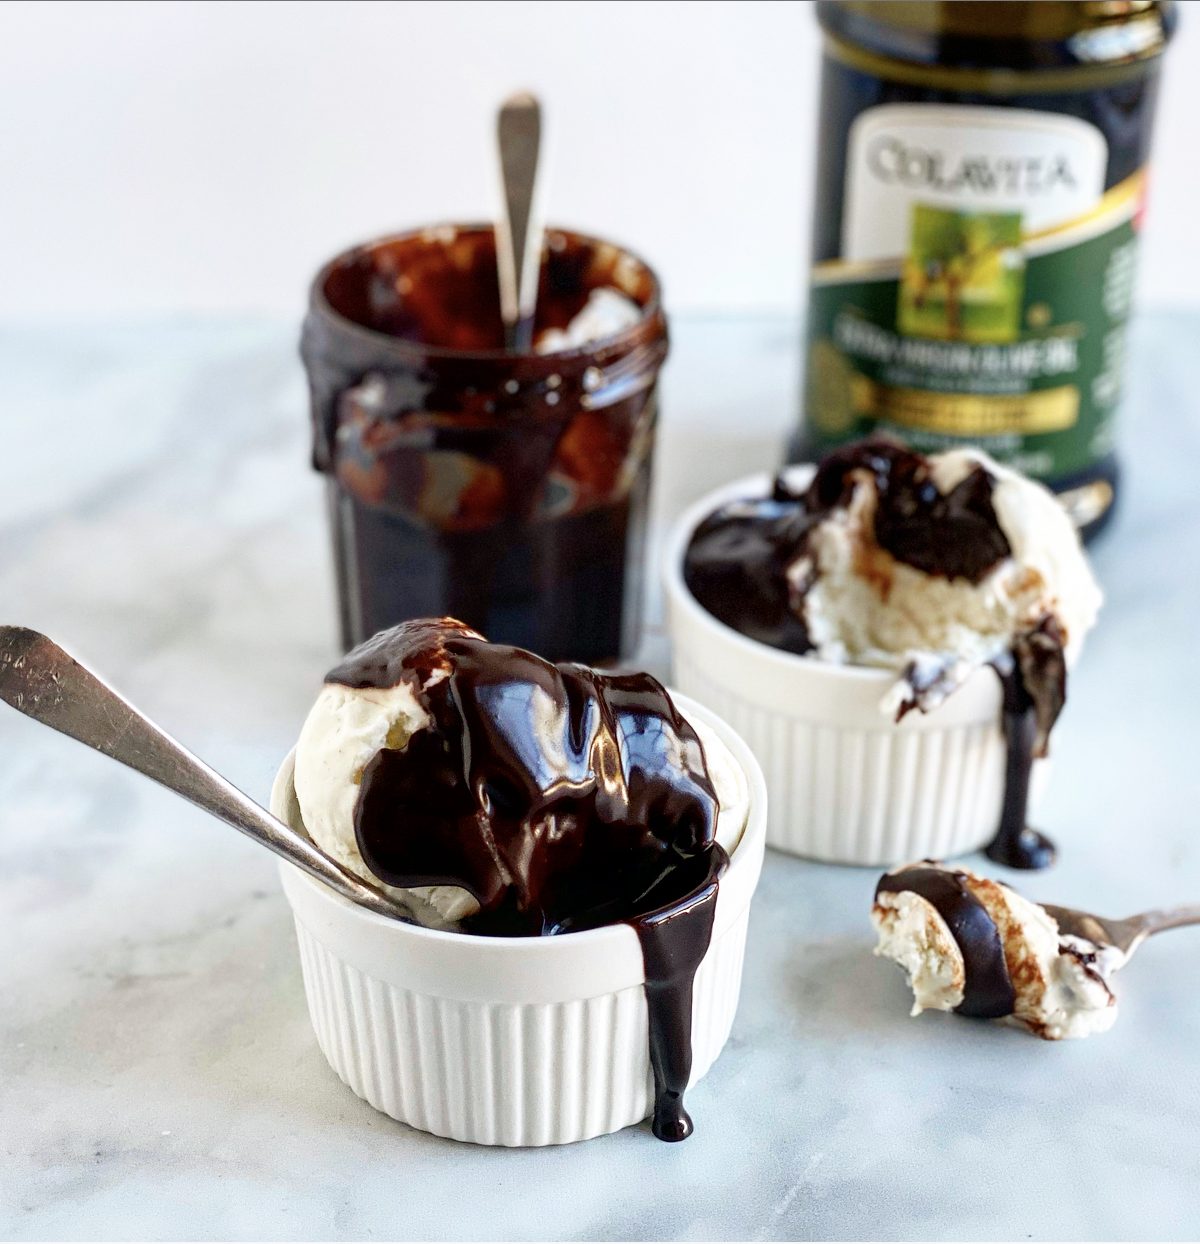 hot fudge ice cream and olive oil